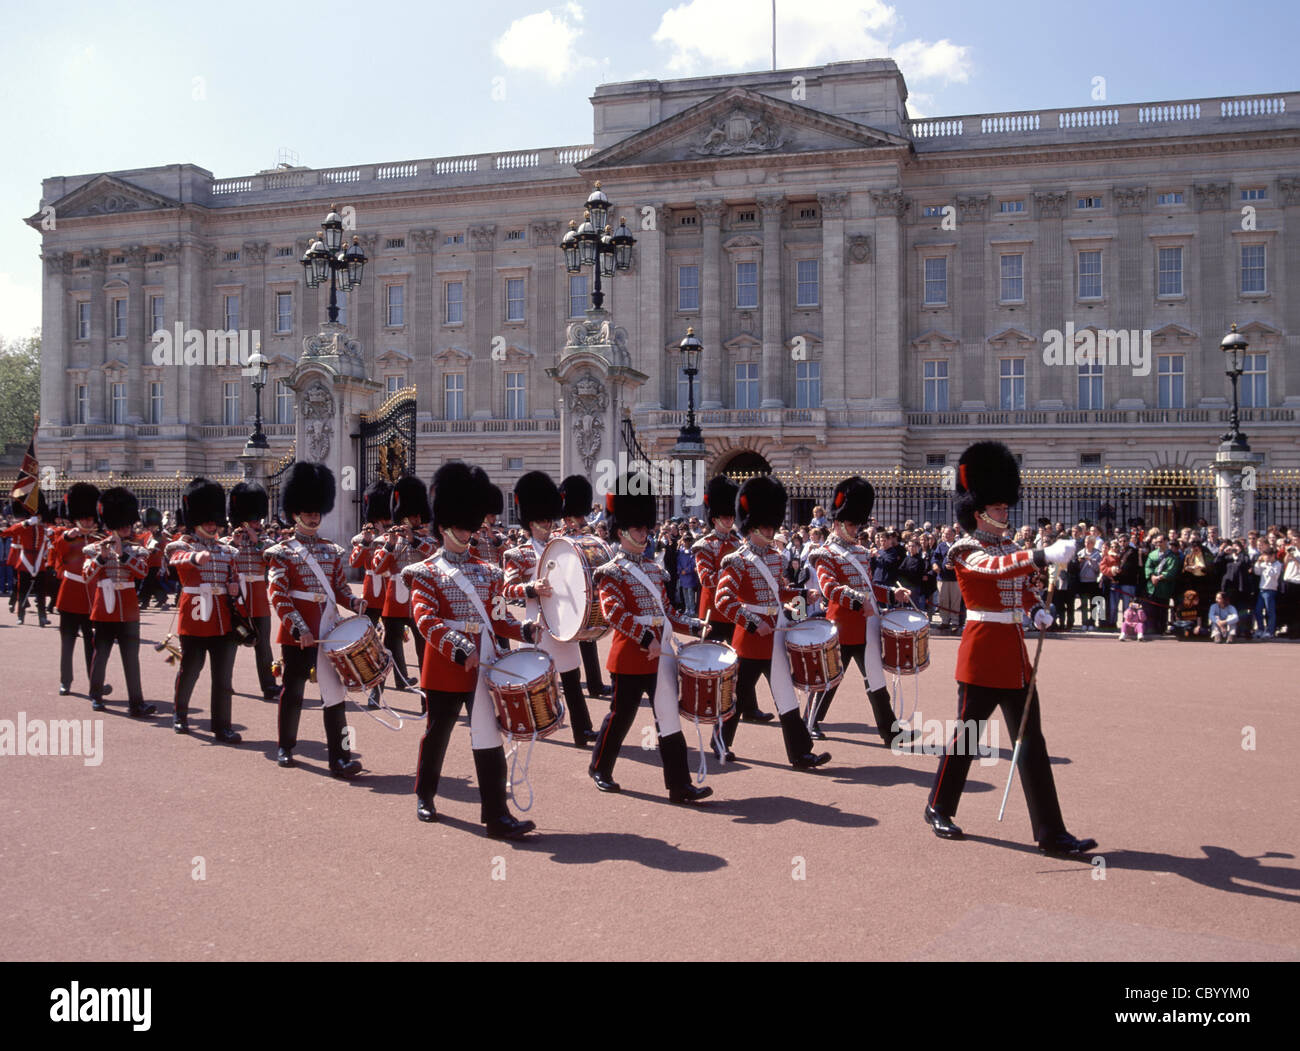 Menschenmassen bei der Wachablösung Britisches Wachregiment Musiker marschieren in zeremonieller Uniform im Buckingham Palace London England VEREINIGTES KÖNIGREICH Stockfoto